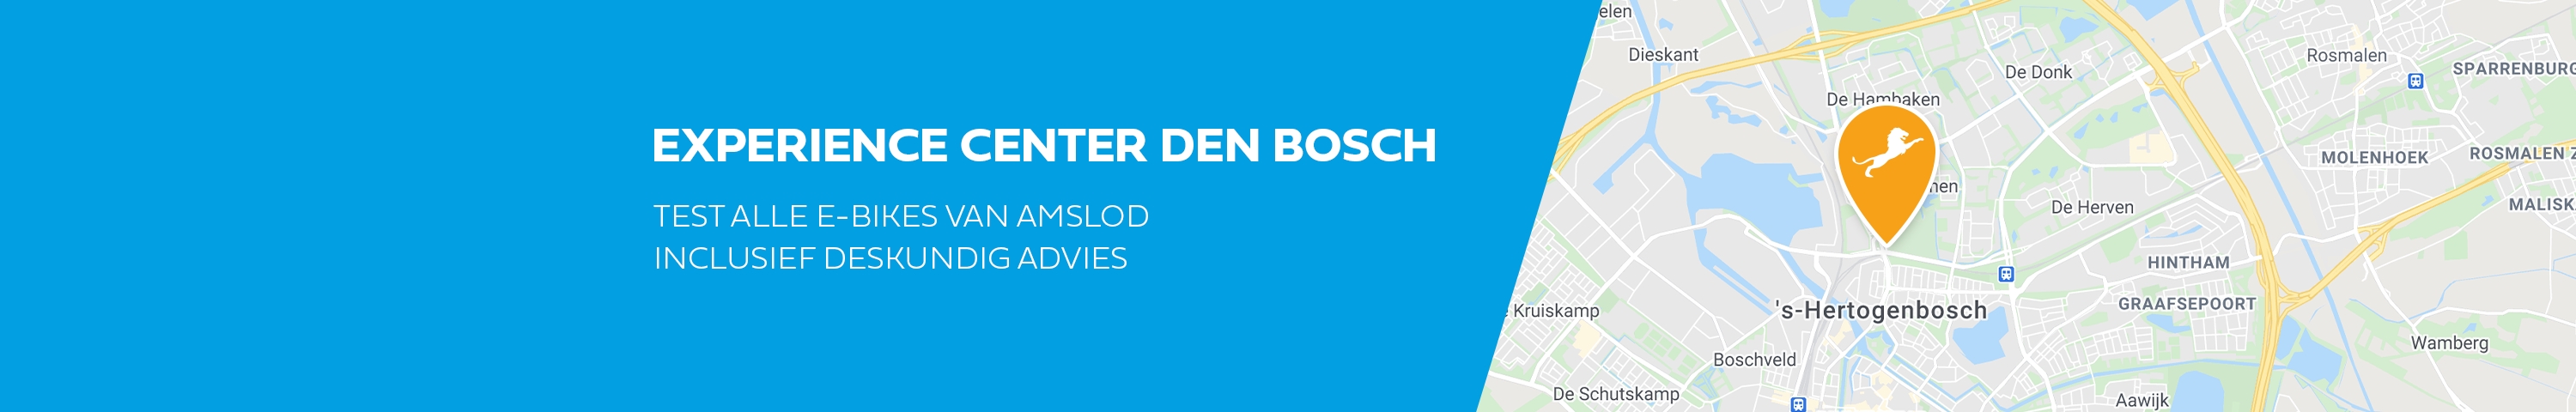 Experience-Center-HeroesDen-Bosch-Hero-Desktop-20210406112958359